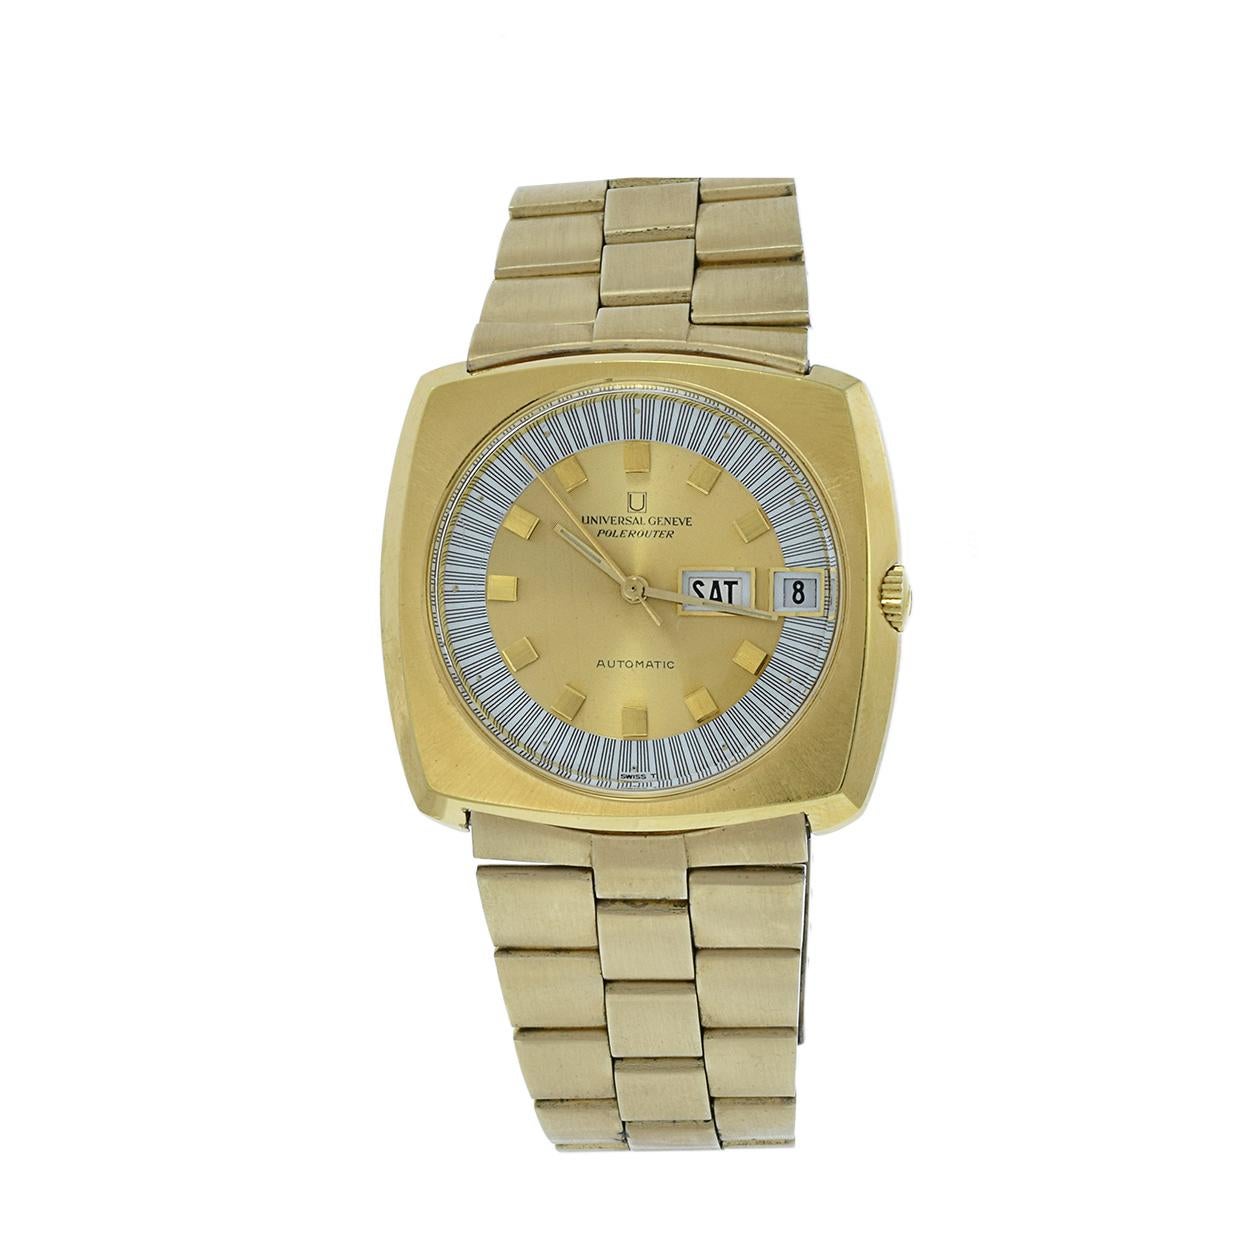 Die seltene Universal Genève Polerouter Automatikuhr aus den 1970er Jahren ist eine unverwechselbare und begehrte Uhr. Mit ihrem quadratischen, vergoldeten 40-mm-Gehäuse und -Armband strahlt sie den charakteristischen Stil der Epoche aus. Das